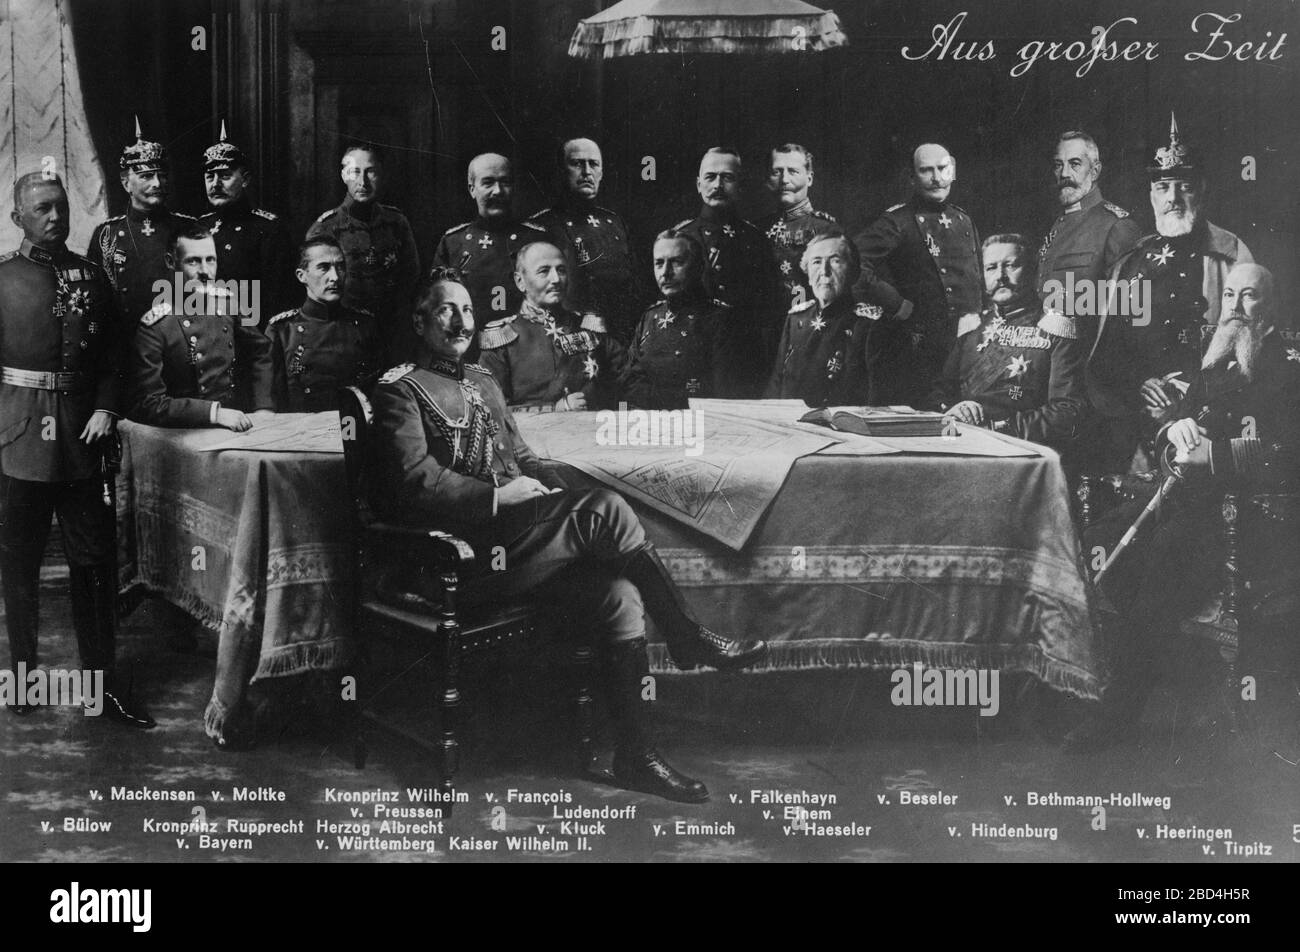 Standing left to right: von Bulow, von Mackensen, von Molike, Crown Prince William of Prussia, von Francois, Ludendorff, von Falkenheyn, von Eimen, von Beseler, von Bethman-Hollweg, von Heeringen. Seated left to right: Crown Prince Rupprecht Stock Photo